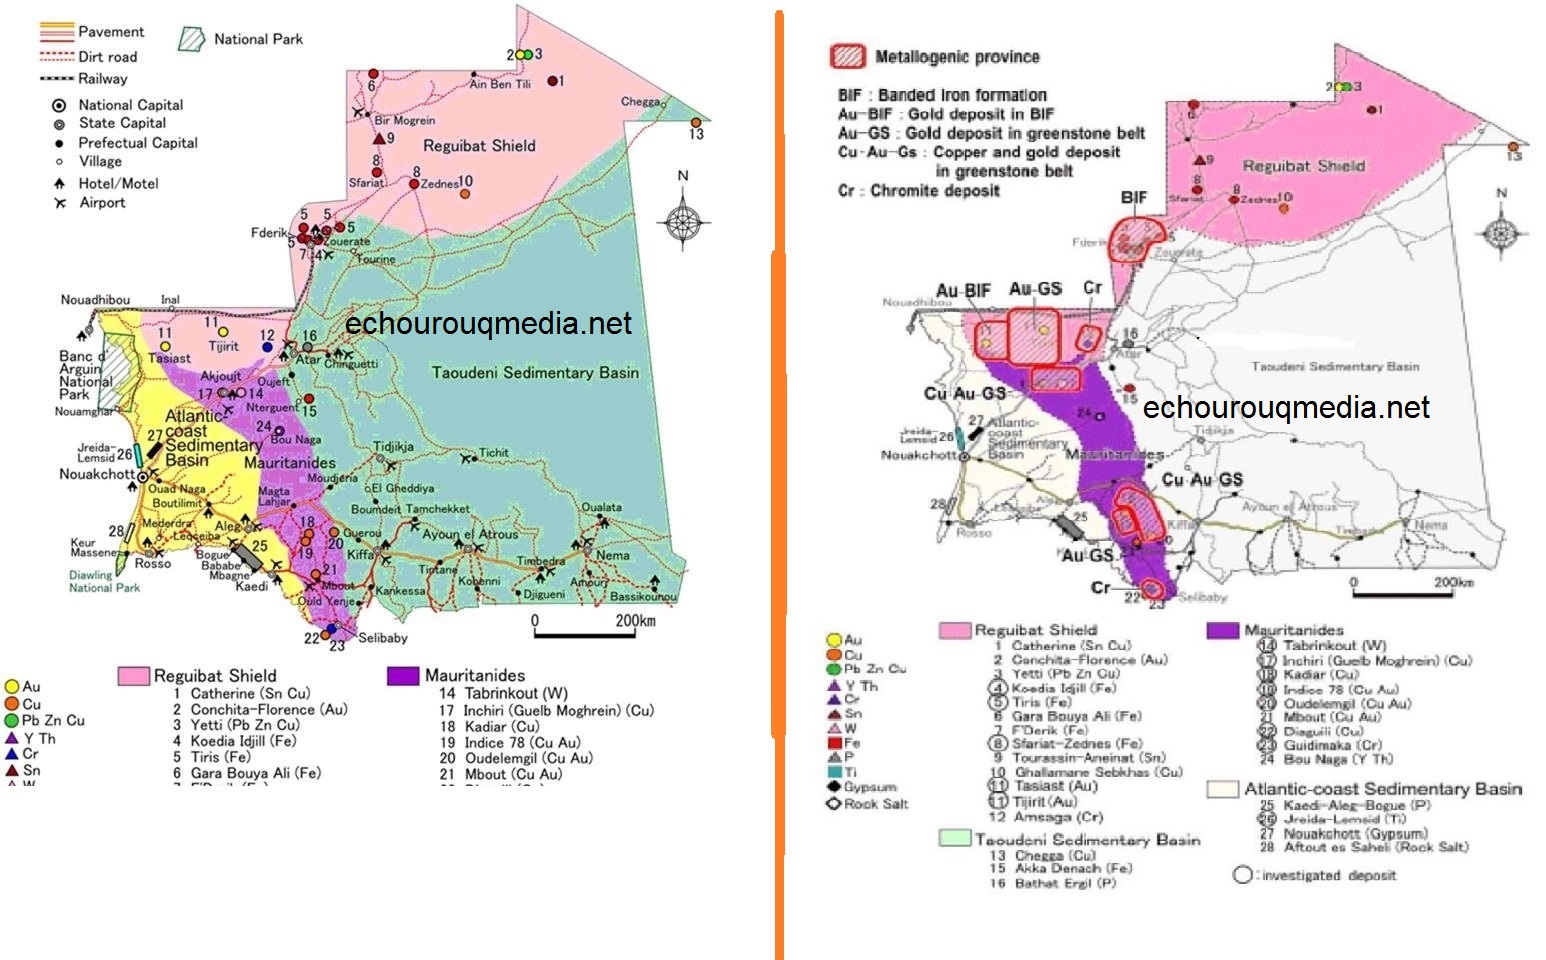 خريطتان تحددان موااقع الذهب في موريتانيا ويرمز لمعدن الذهب  ب AU